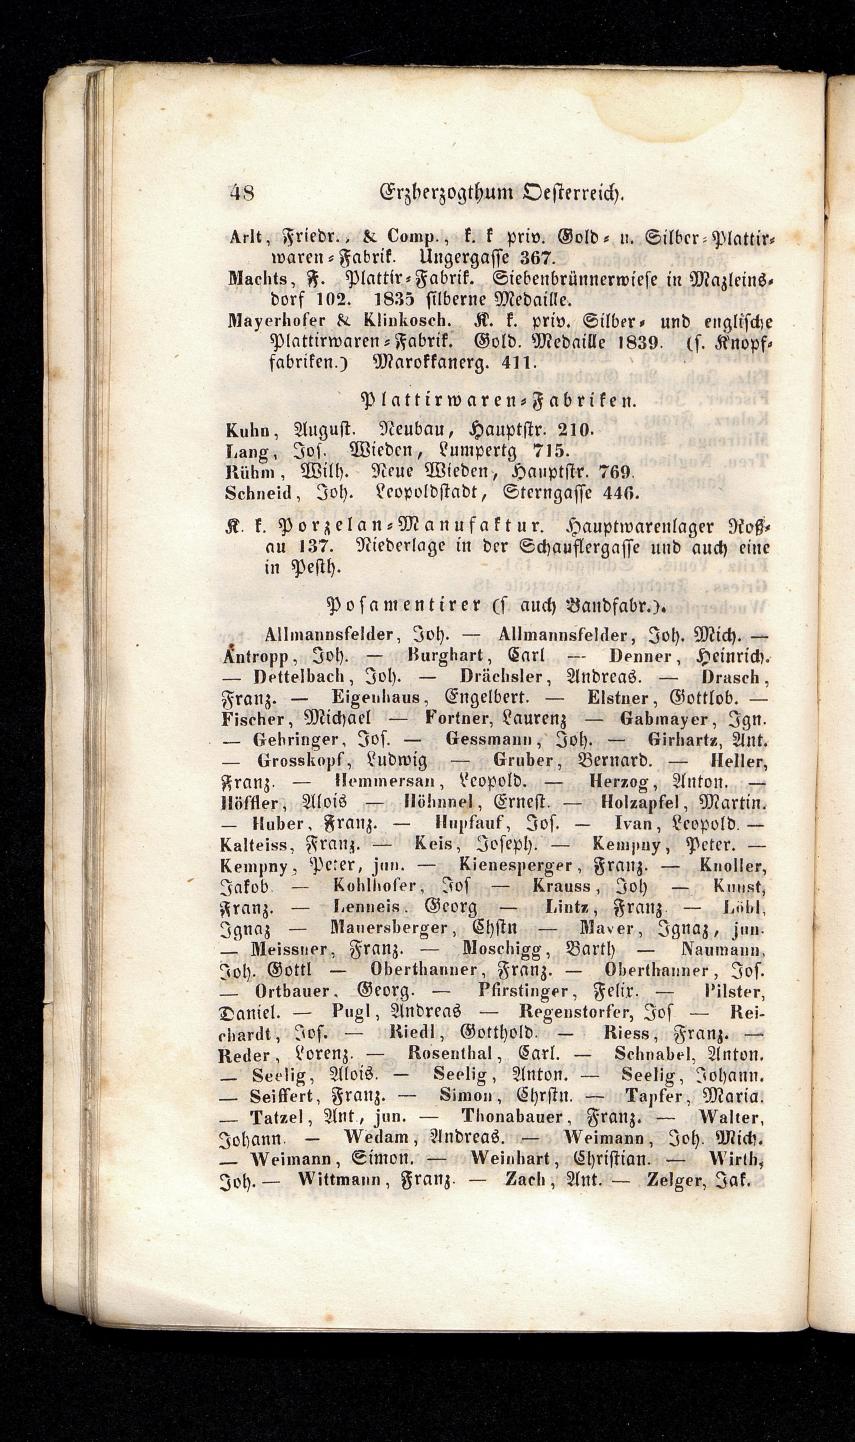 Grosses Adressbuch der Kaufleute. No. 13. Oesterreich ober u. unter der Enns 1844 - Seite 52